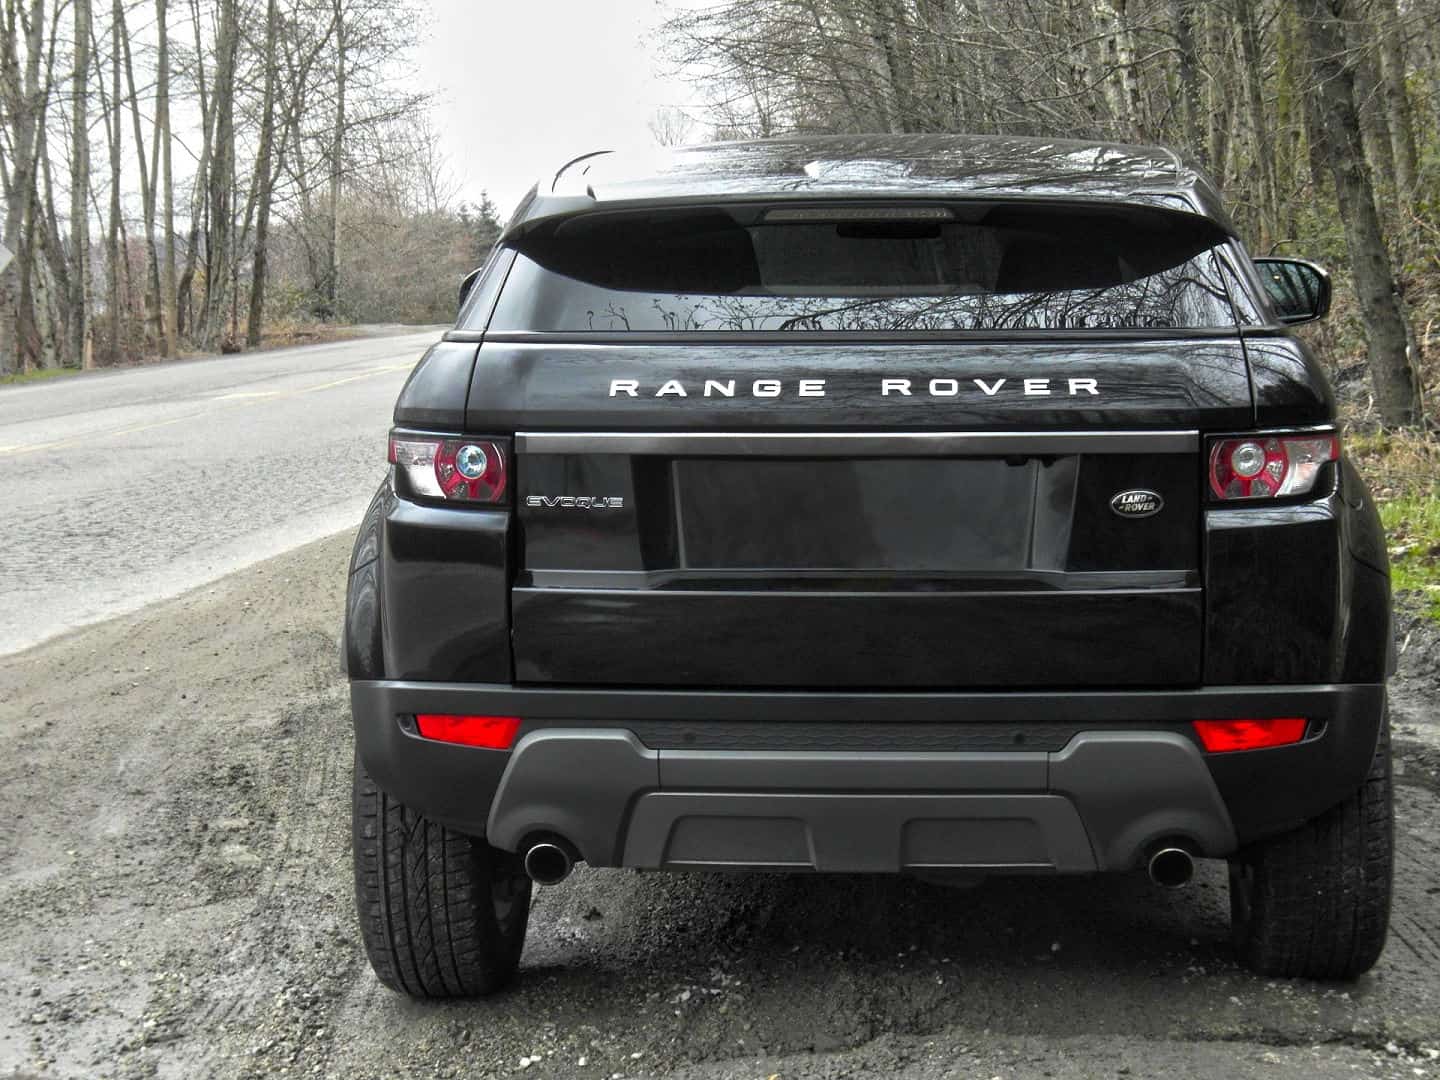 2013 Range Rover Evoque rear